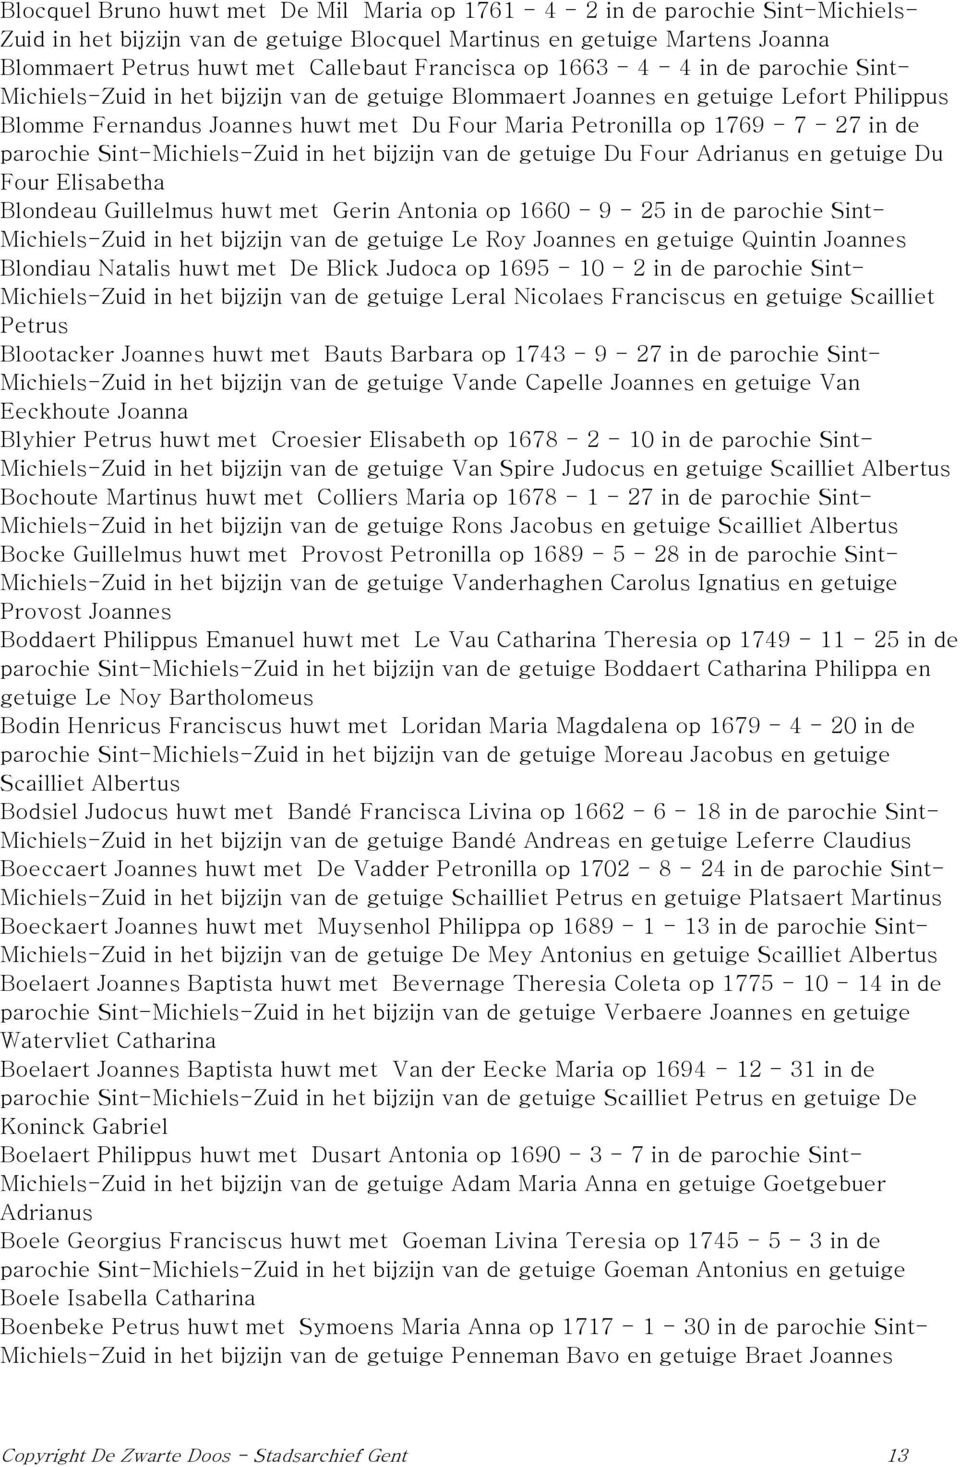 1769-7 - 27 in de parochie Sint-Michiels-Zuid in het bijzijn van de getuige Du Four Adrianus en getuige Du Four Elisabetha Blondeau Guillelmus huwt met Gerin Antonia op 1660-9 - 25 in de parochie